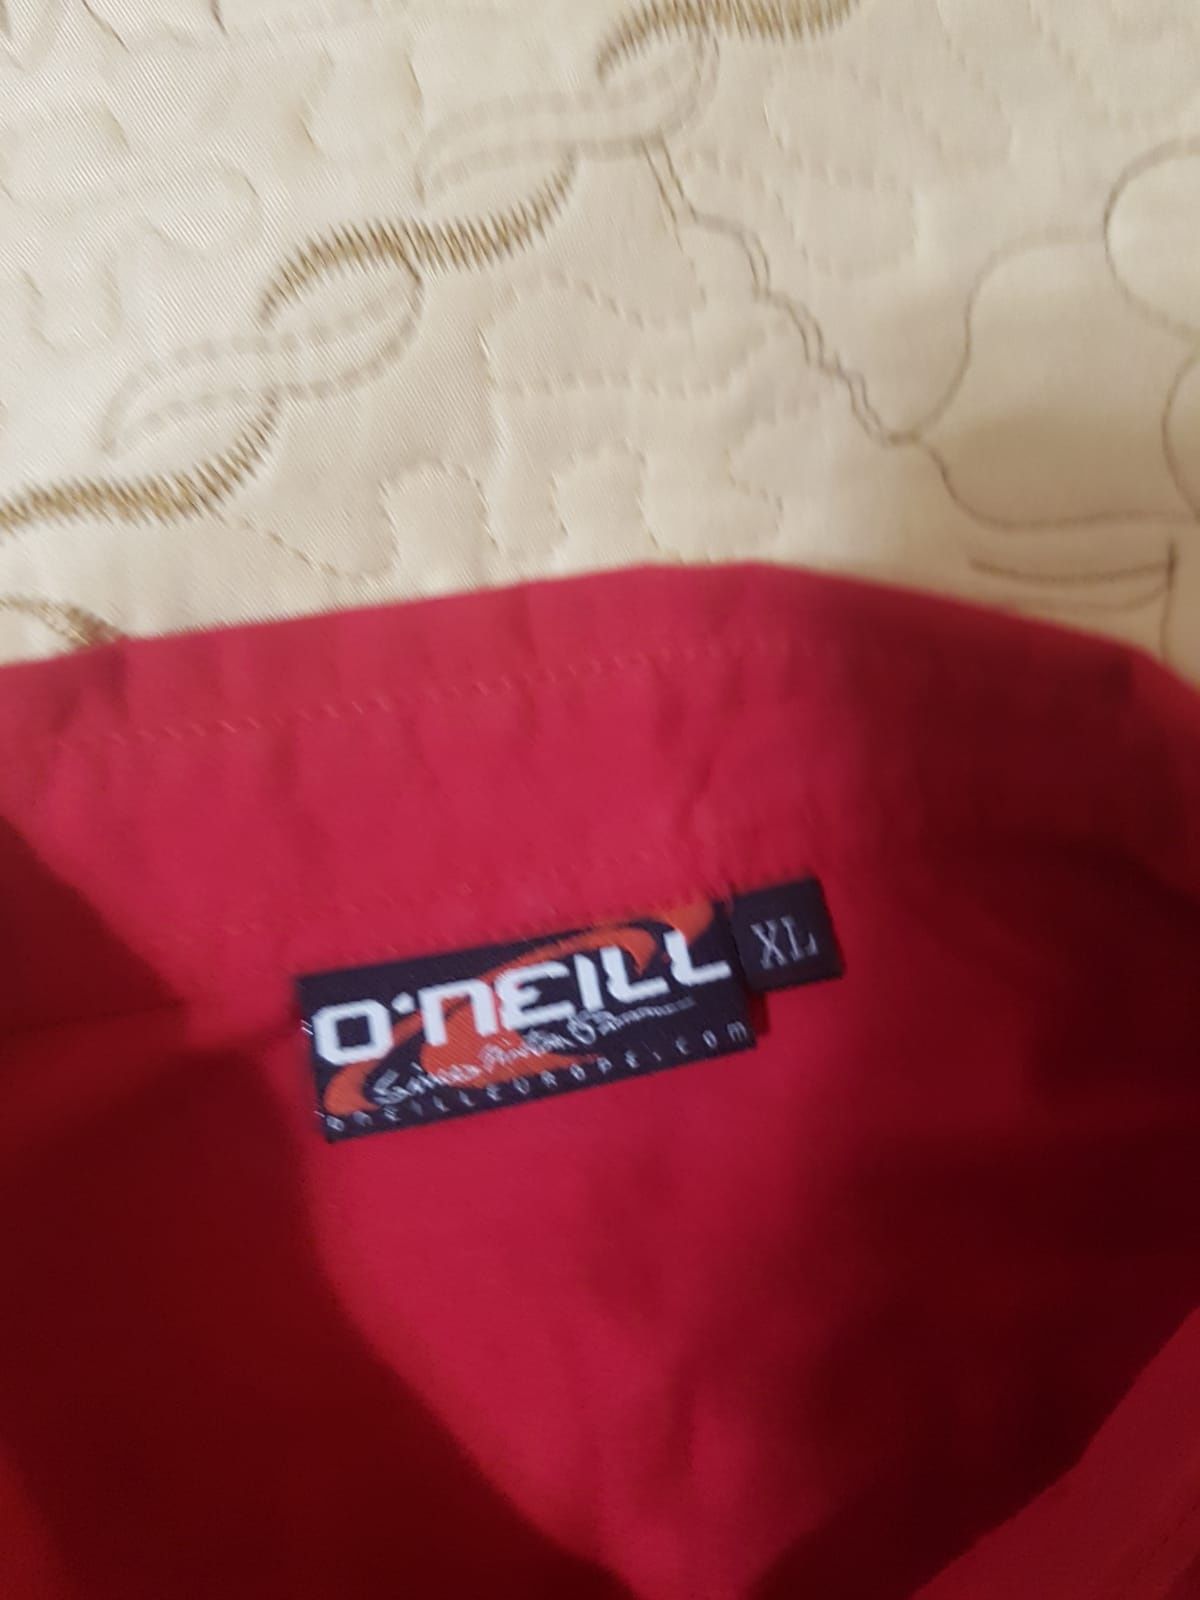 Cămașă Oneill originală adusă recent Franța